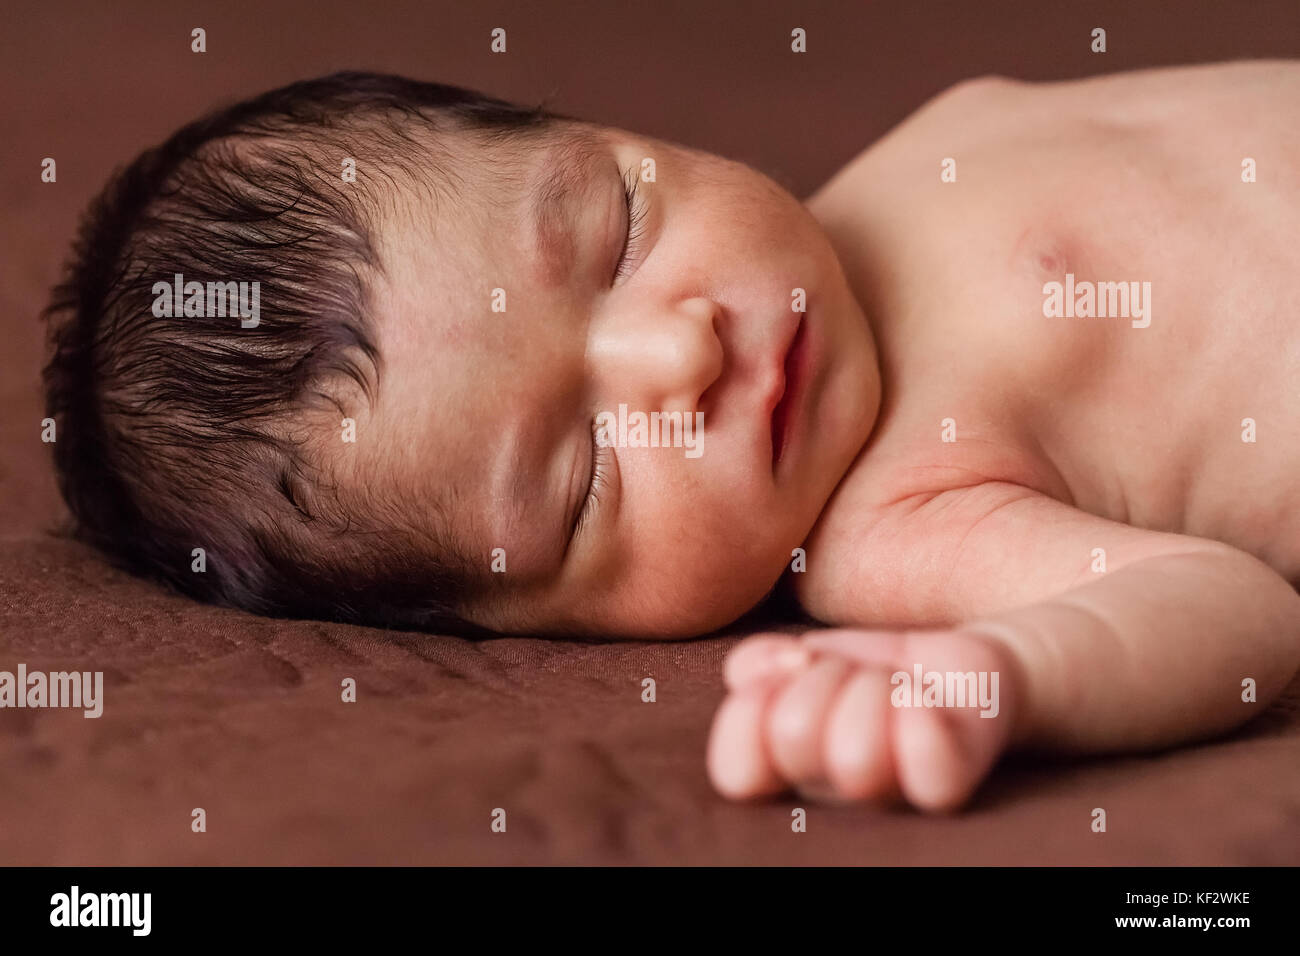 Gros plan portrait d'un mignon deux semaines nouveau-né bébé fille sans vêtements, nu ou nu, dormir paisiblement dans le lit / nouveau-né bébé fille dormir Banque D'Images